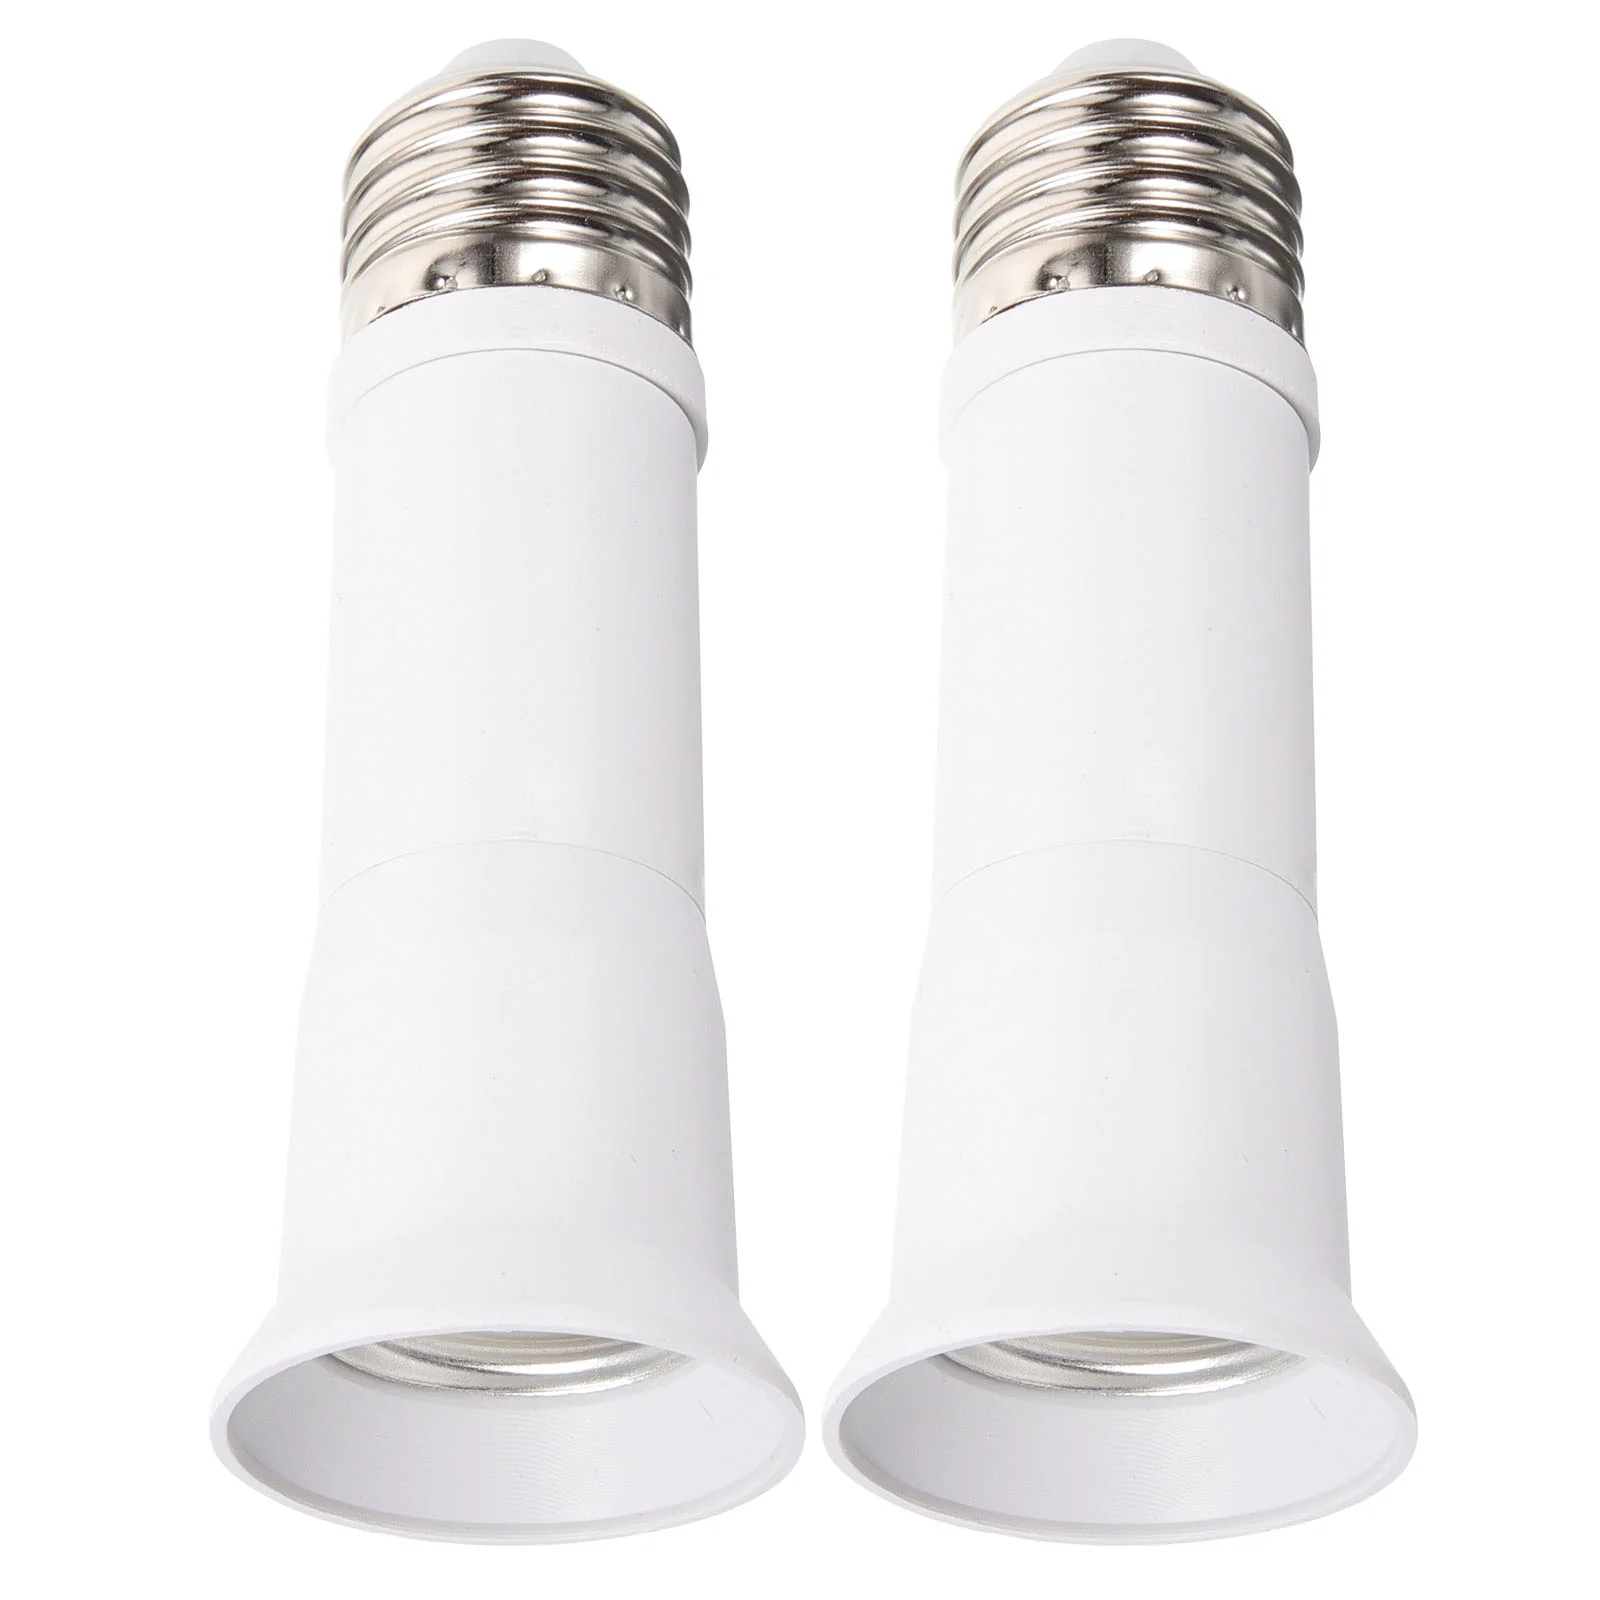 

2 Pcs E27 Retractable Lamp Head Light Bulbs Bulb Holder Extender Metal Base